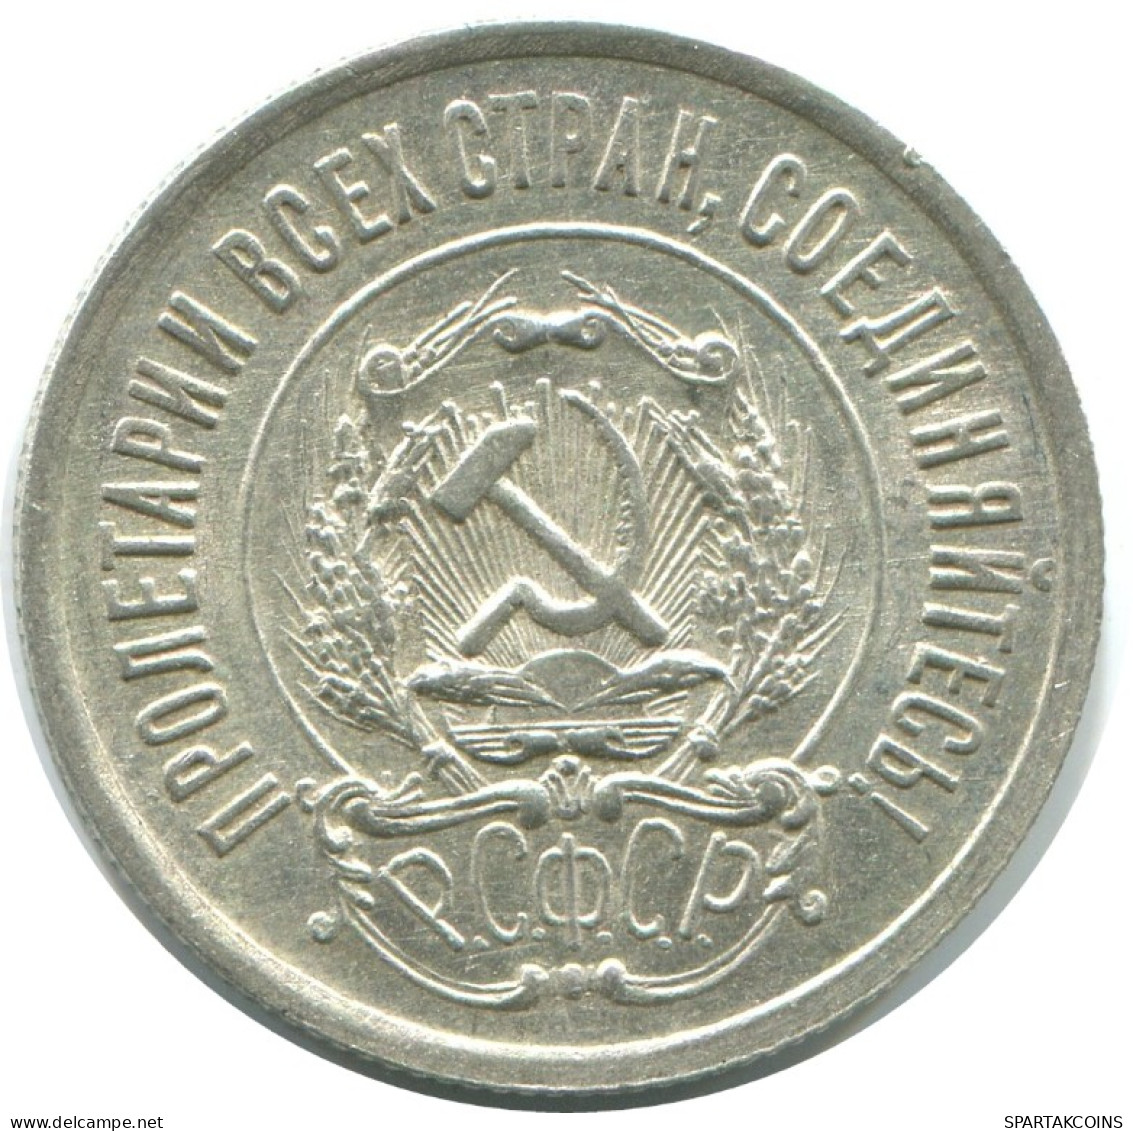 20 KOPEKS 1923 RUSSLAND RUSSIA RSFSR SILBER Münze HIGH GRADE #AF563.4.D.A - Russia